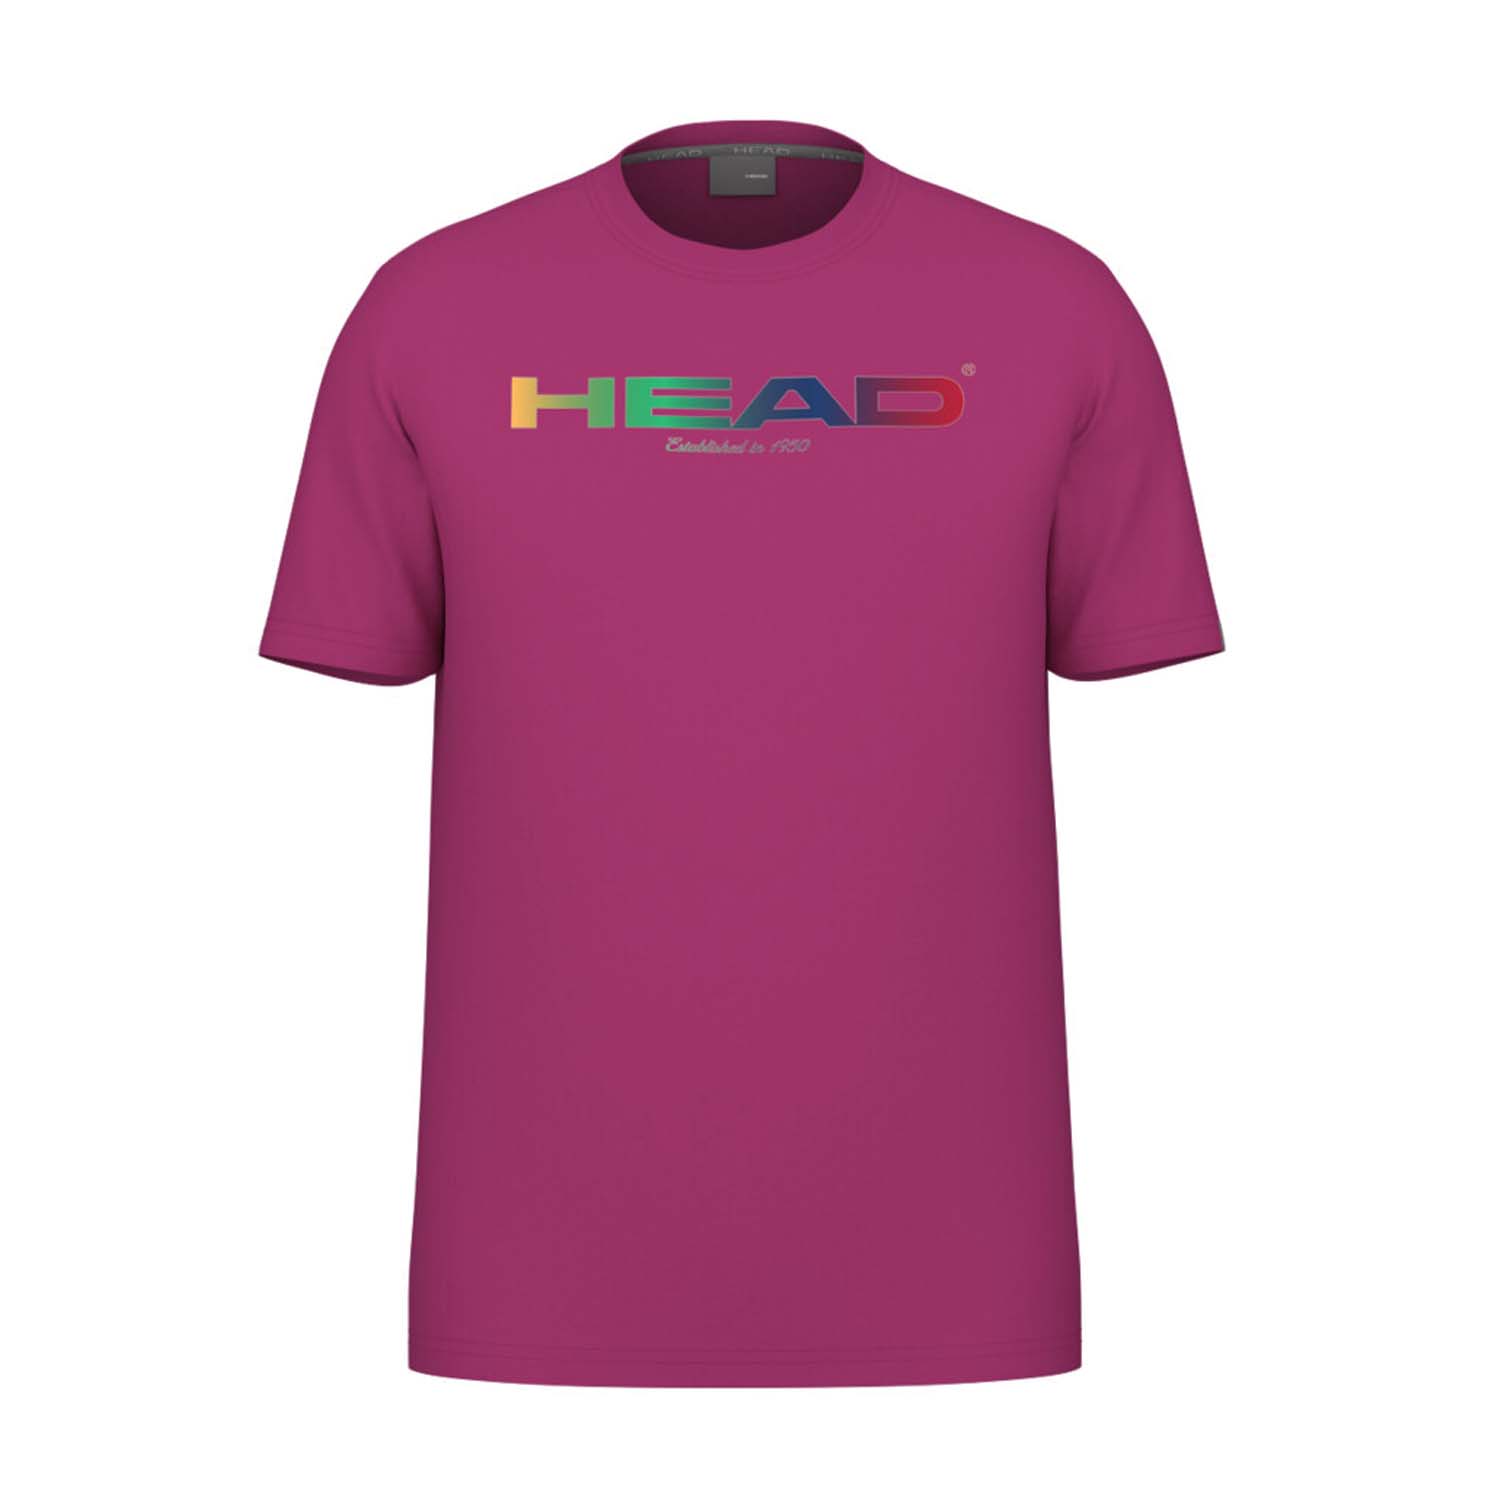 Head Rainbow Camiseta Niños - Vivid Pink